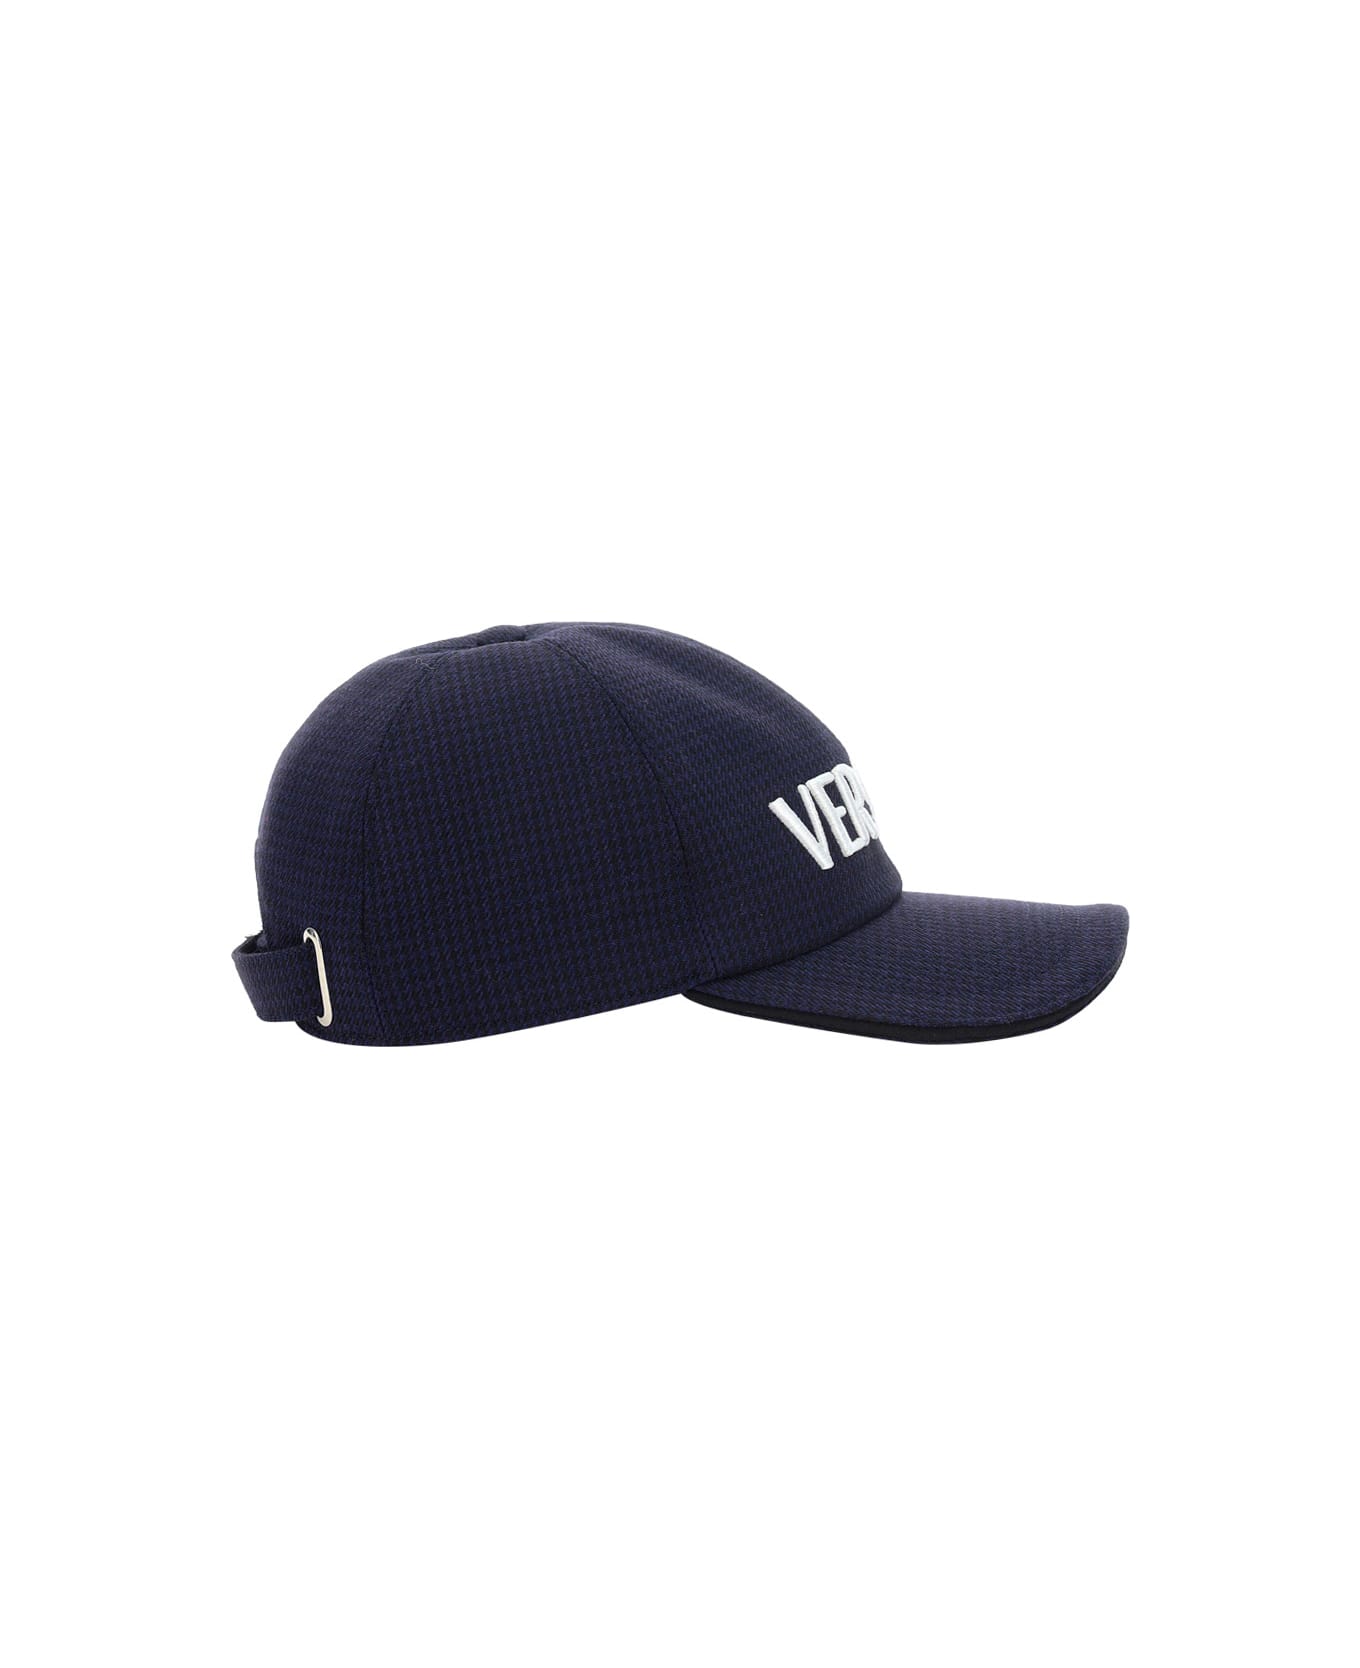 Versace Baseball Cap - Nero+navy